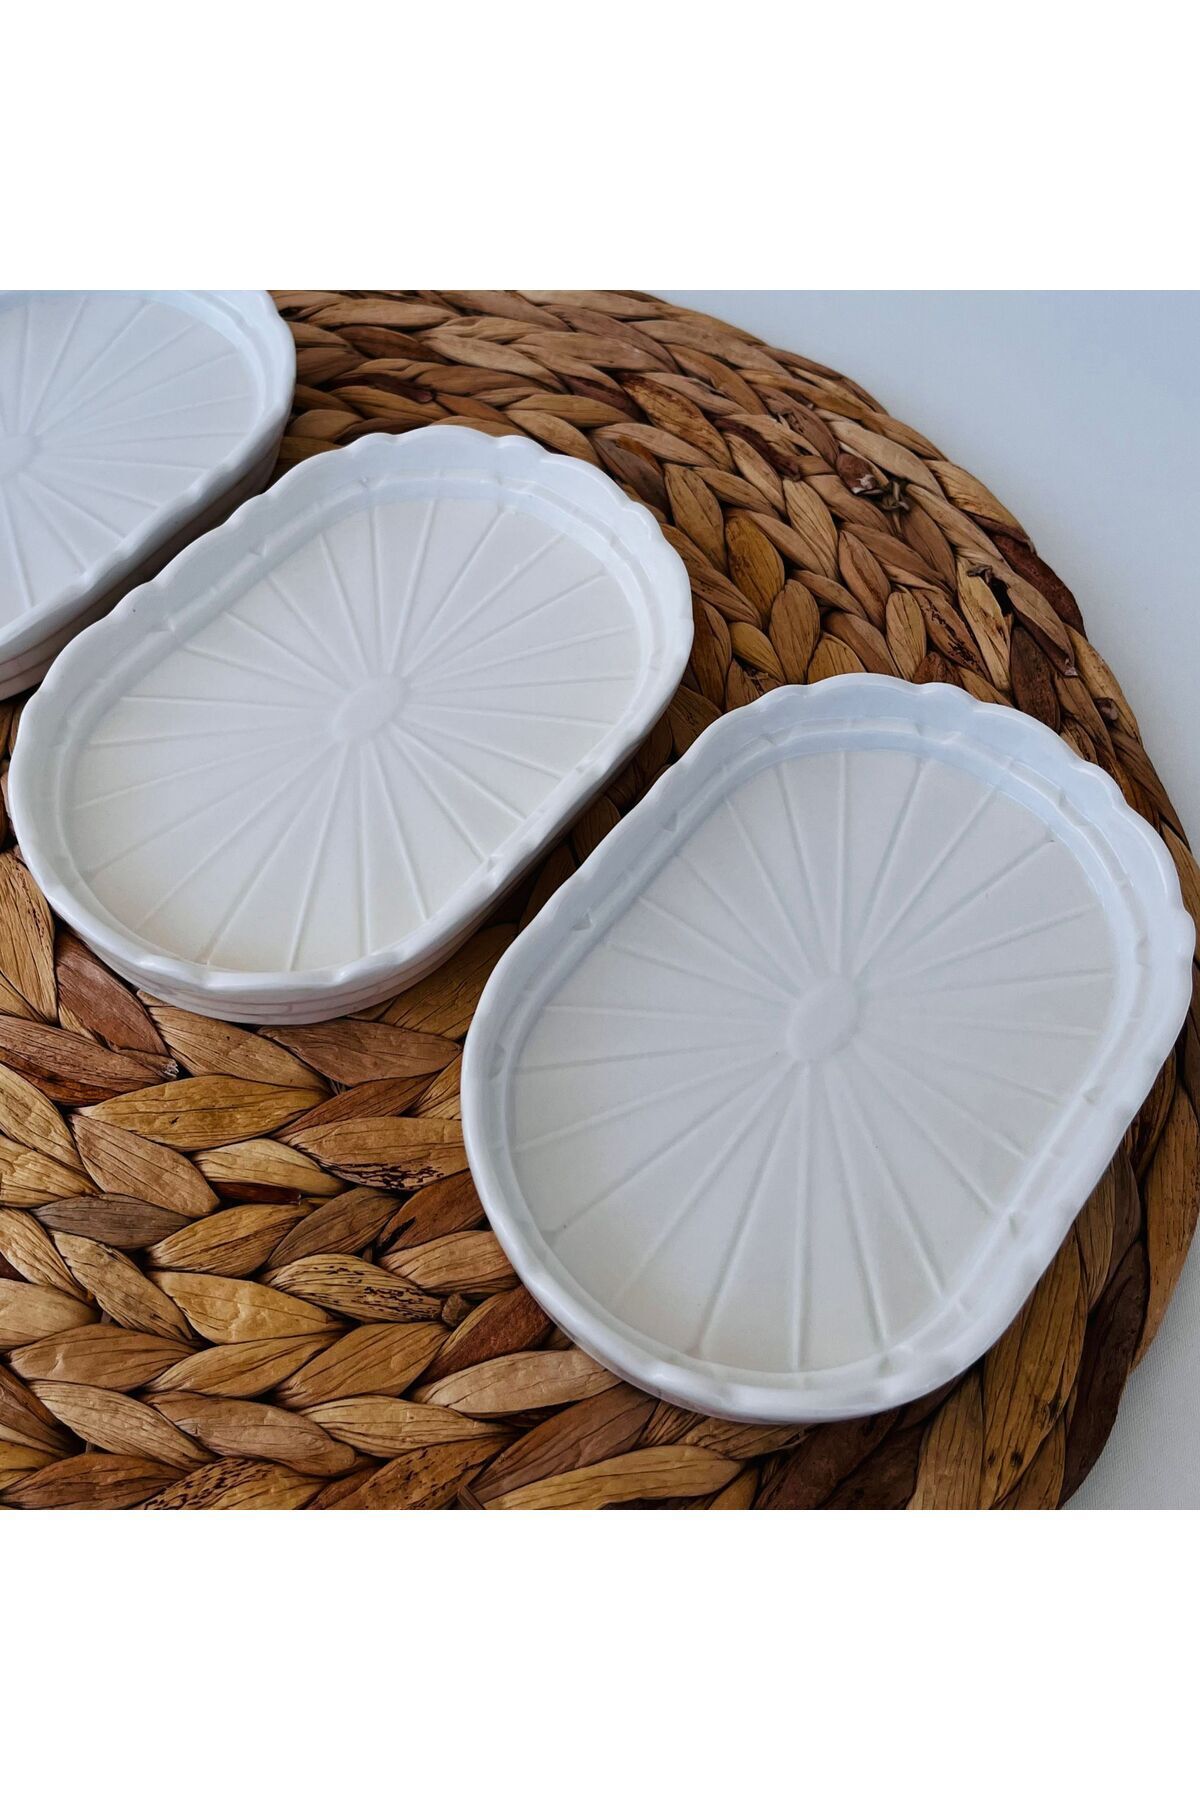 LILY HOME papatya model 3lü oval sunum tabağı-kahvaltılık